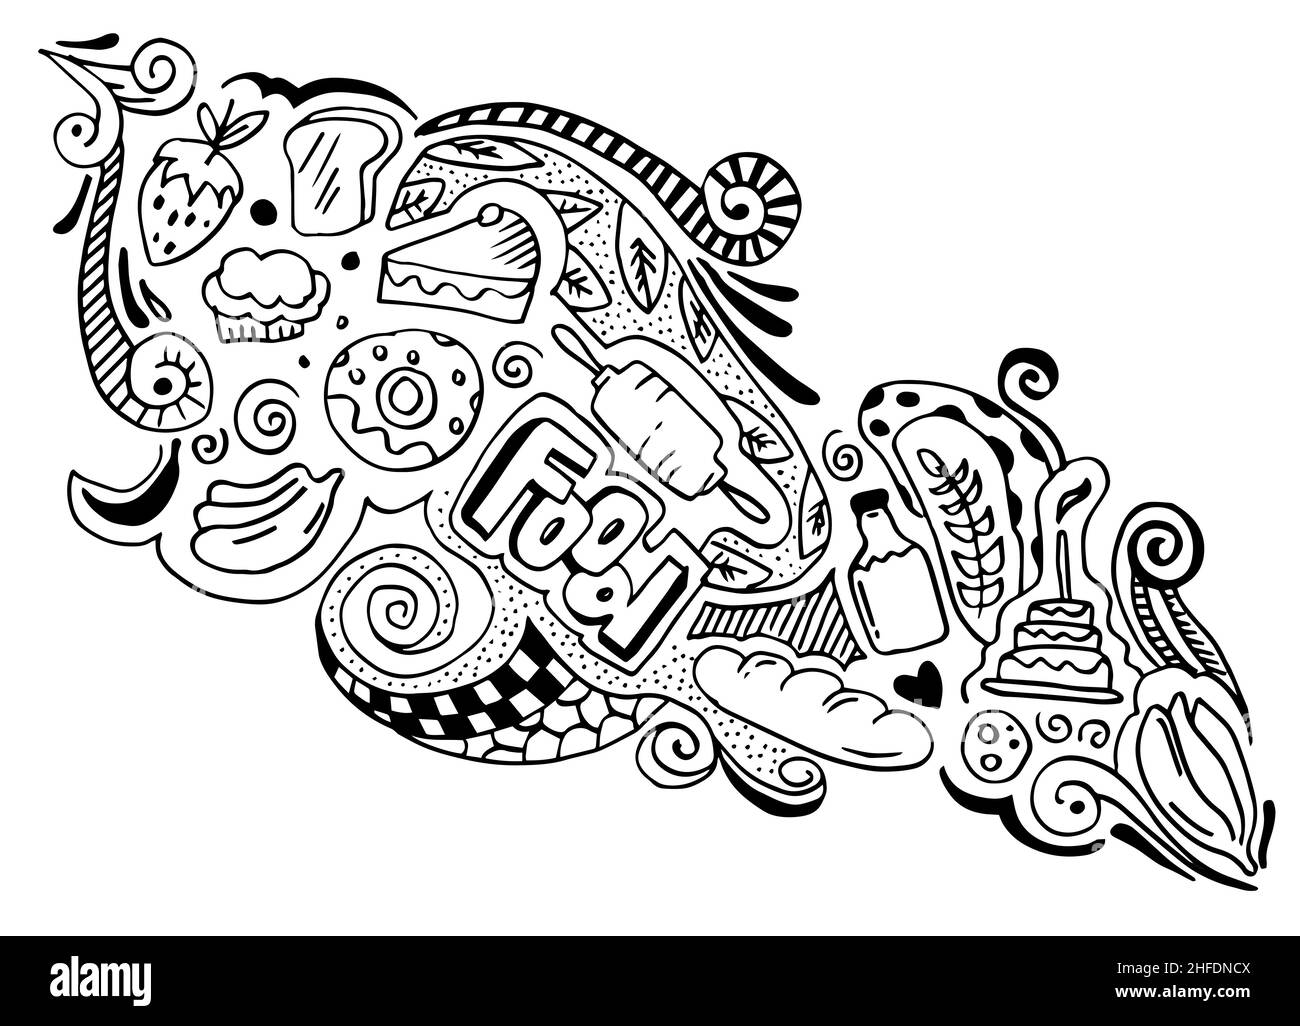 art créatif de l'élément de conception de nourriture dans le style doodle.illustration vectorielle. Banque D'Images